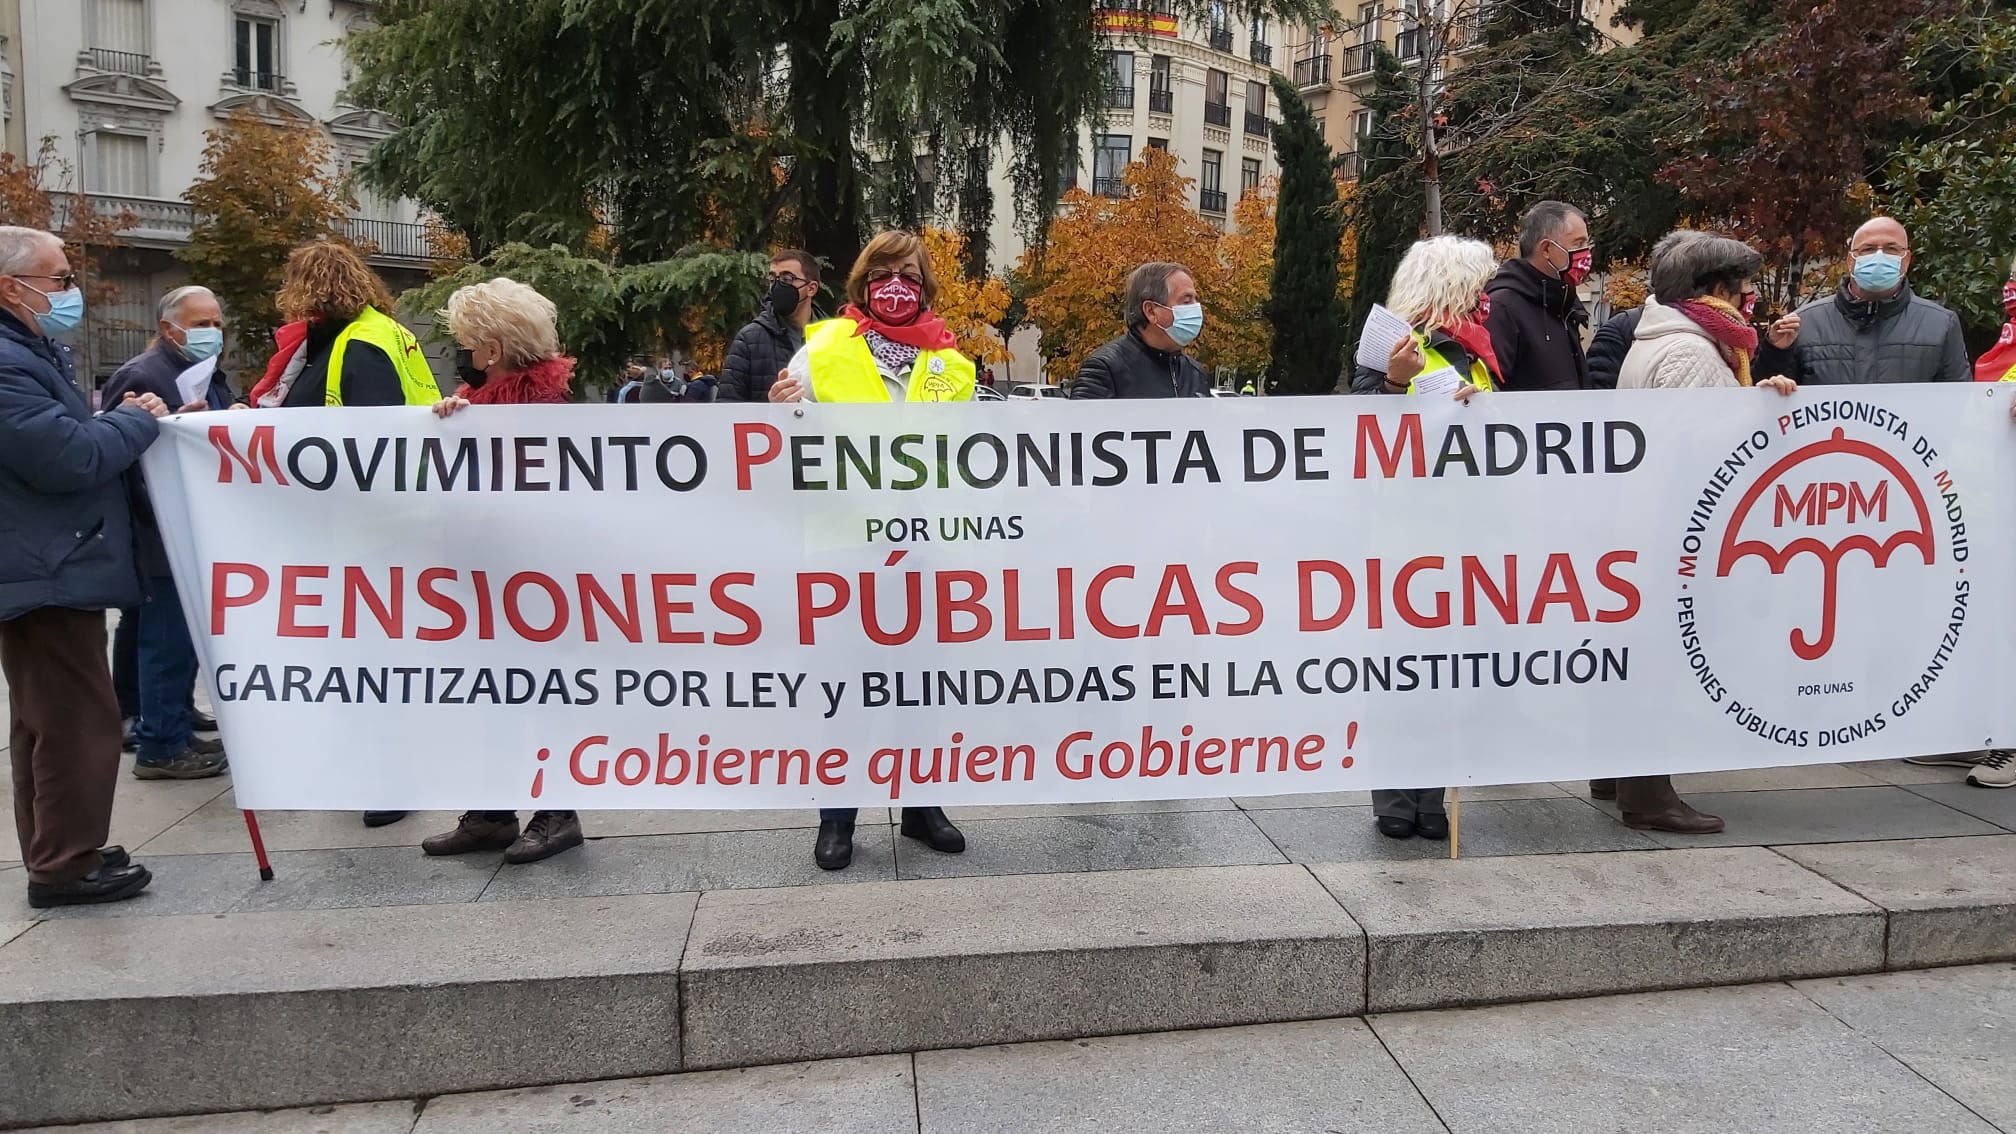 Dignidad y reconocimiento del Movimiento Pensionista a nivel Estatal